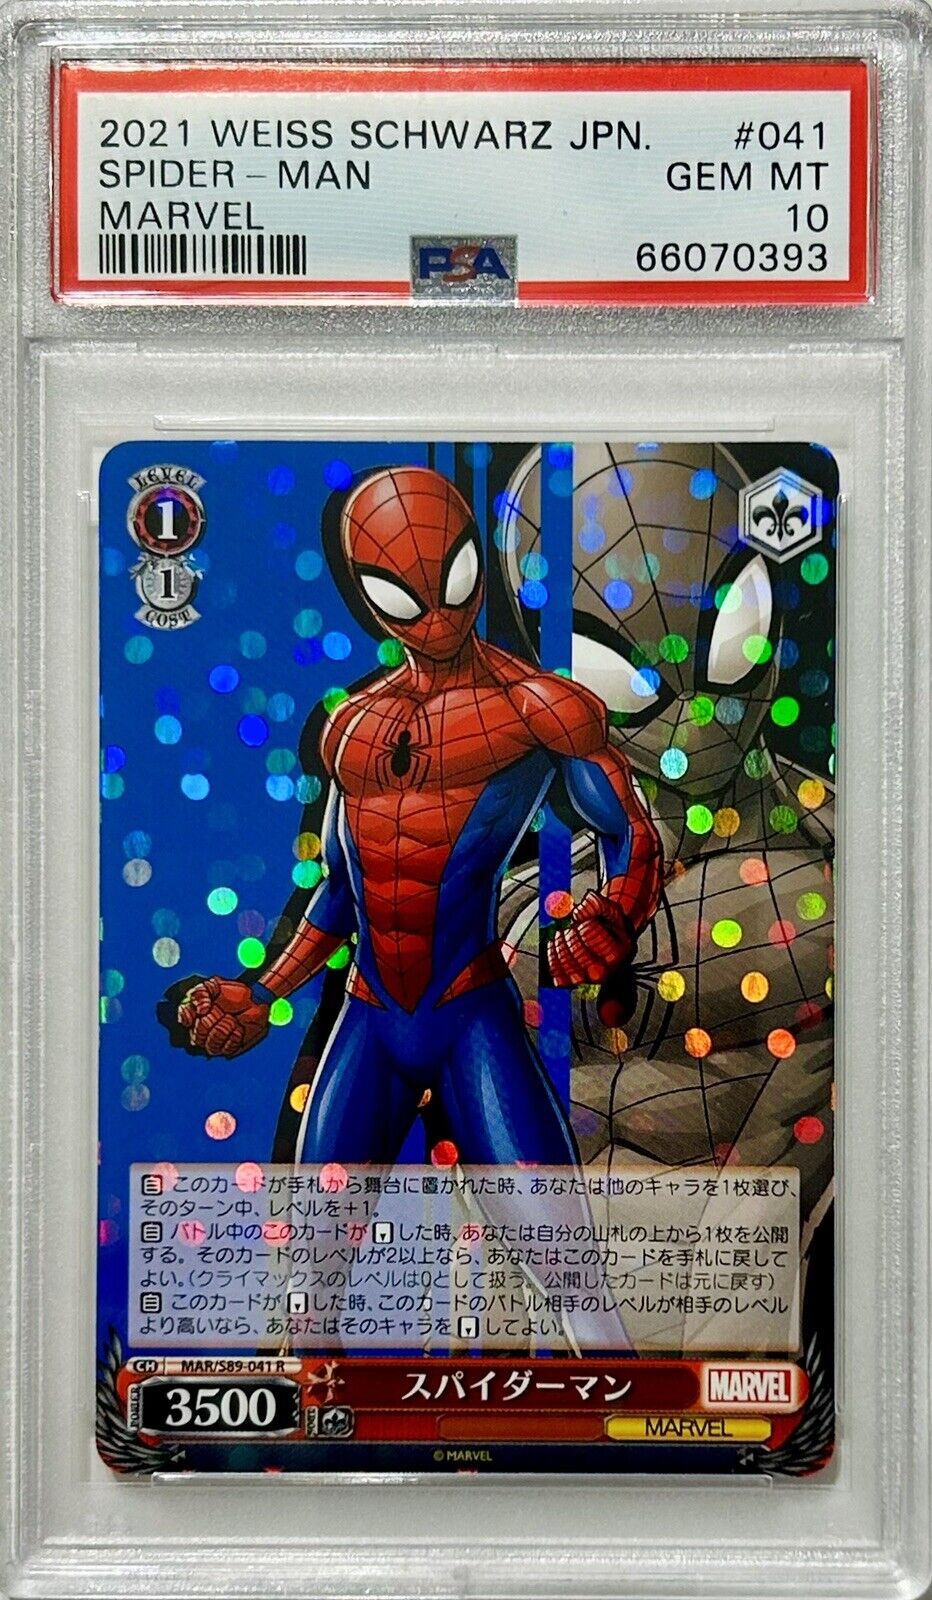 2021 Weiss Schwarz Japanese #041 Spider-Man Marvel PSA 10 Gem Mint